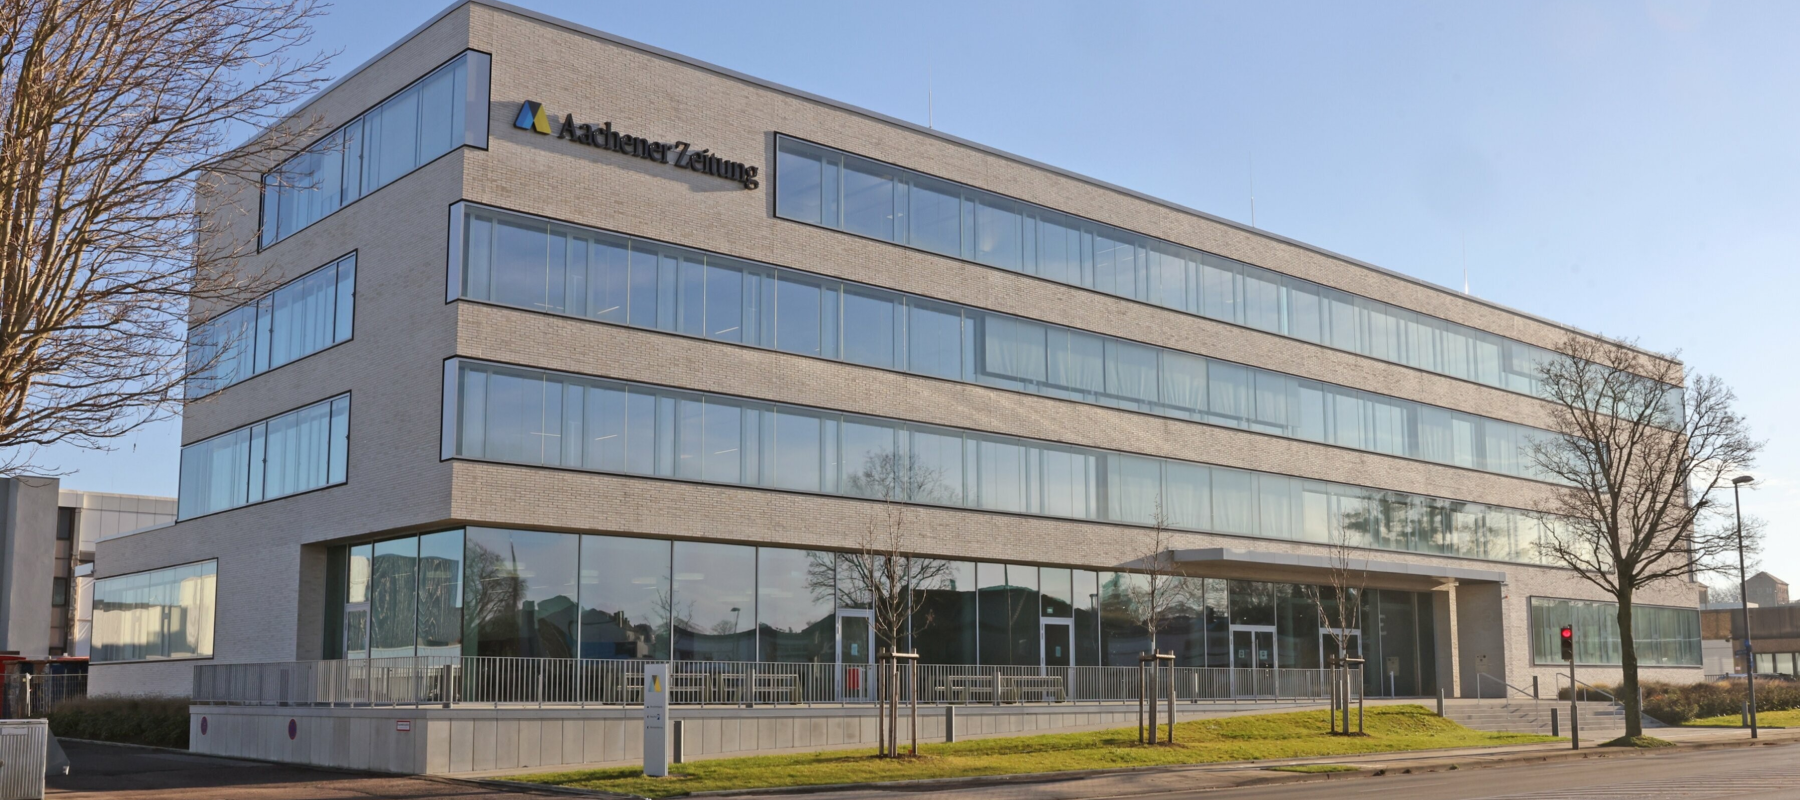 Mediahuis verwerft volledige eigendom Medienhaus Aachen GmbH